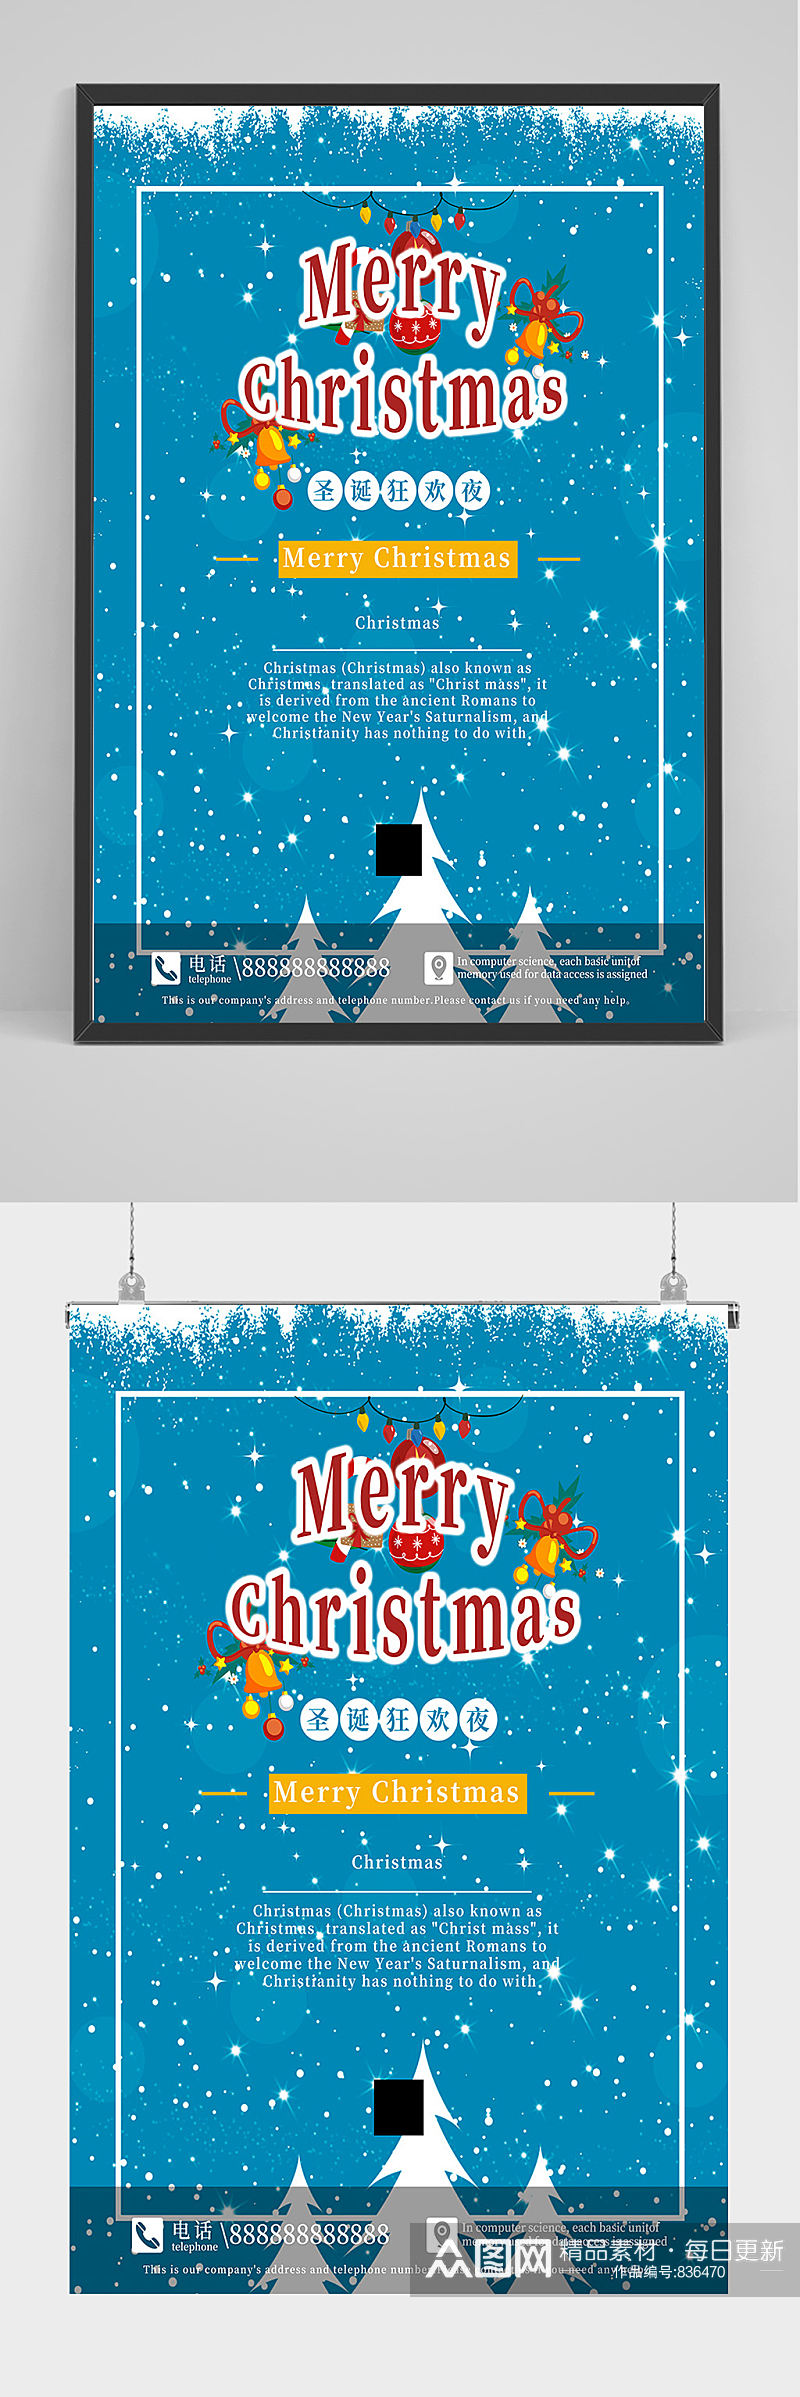 蓝色圣诞节海报设计素材